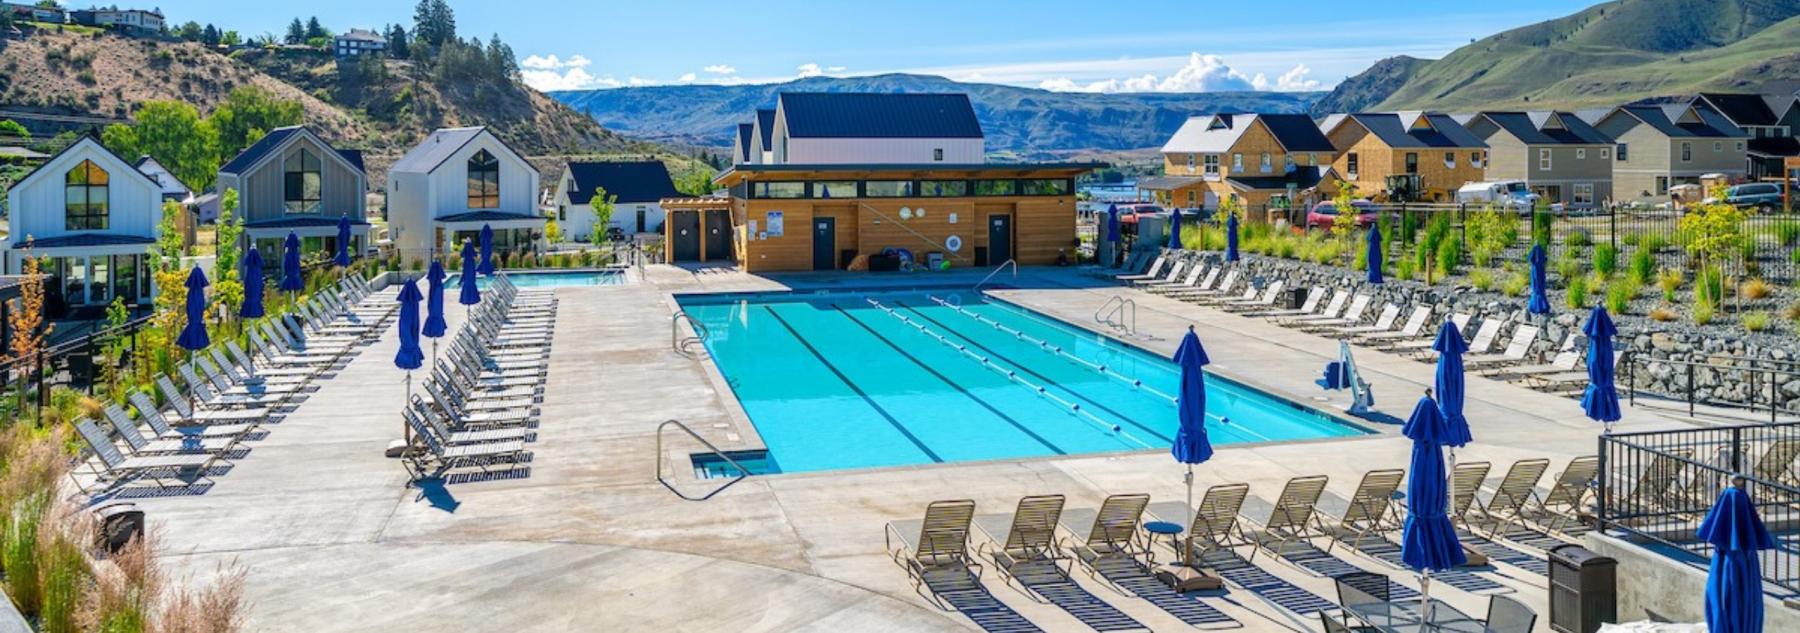 Vineyard Pool, outdoor pool, resort pool, lap pool